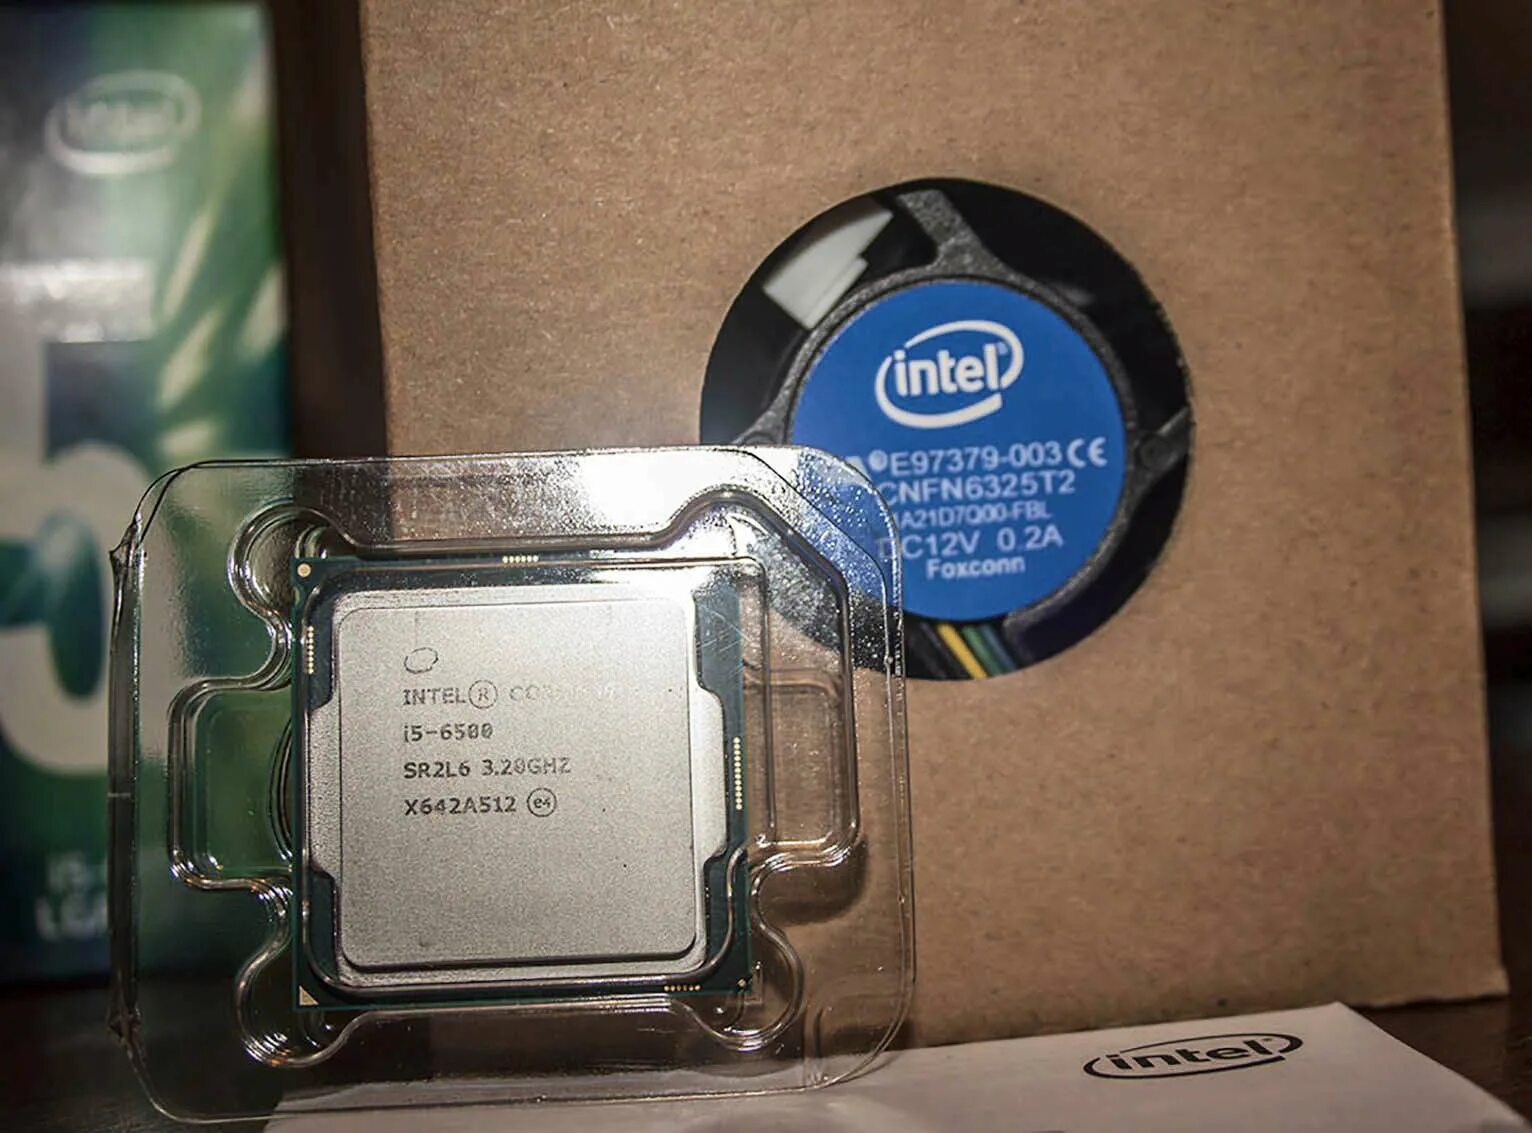 Intel Core i5-6500. Процессор Intel Core i5-6500 Skylake. Процессор Intel Core i5 6500 i5-6500 LGA 1151. Intel Core i5 6500 Skylake. I5 6500 сокет